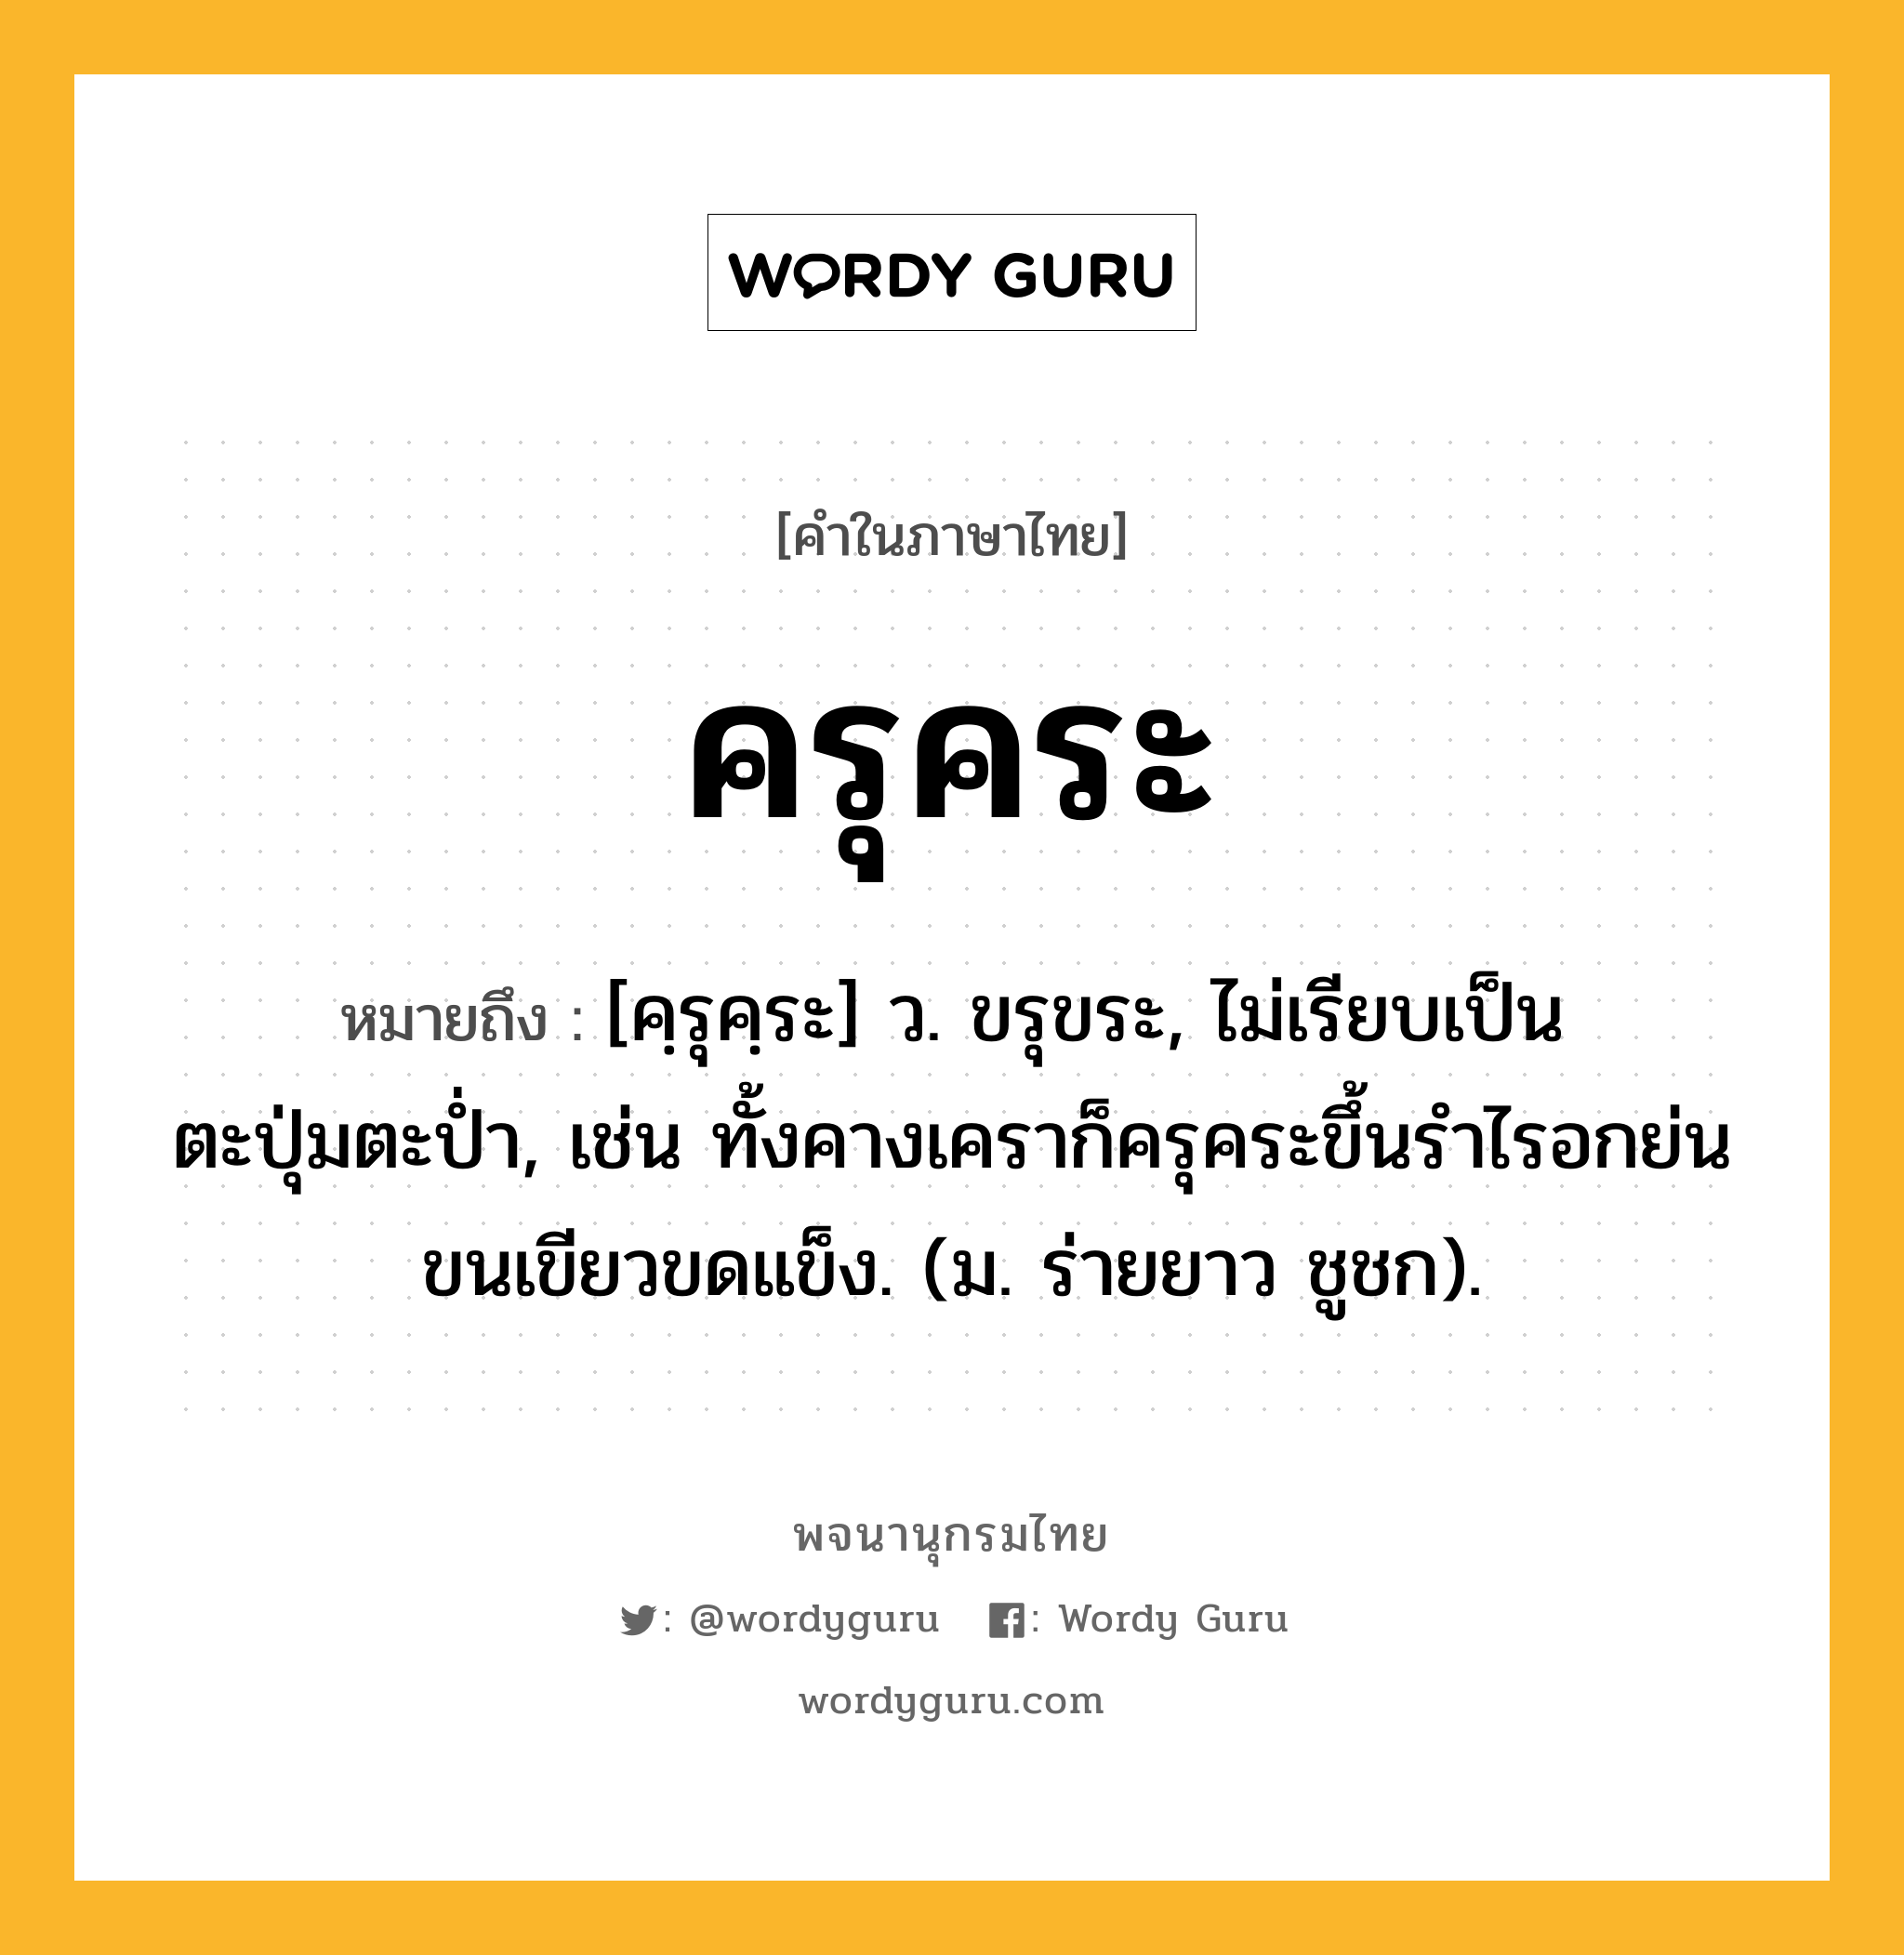 ครุคระ ความหมาย หมายถึงอะไร?, คำในภาษาไทย ครุคระ หมายถึง [คฺรุคฺระ] ว. ขรุขระ, ไม่เรียบเป็นตะปุ่มตะป่ำ, เช่น ทั้งคางเคราก็ครุคระขึ้นรำไรอกย่นขนเขียวขดแข็ง. (ม. ร่ายยาว ชูชก).